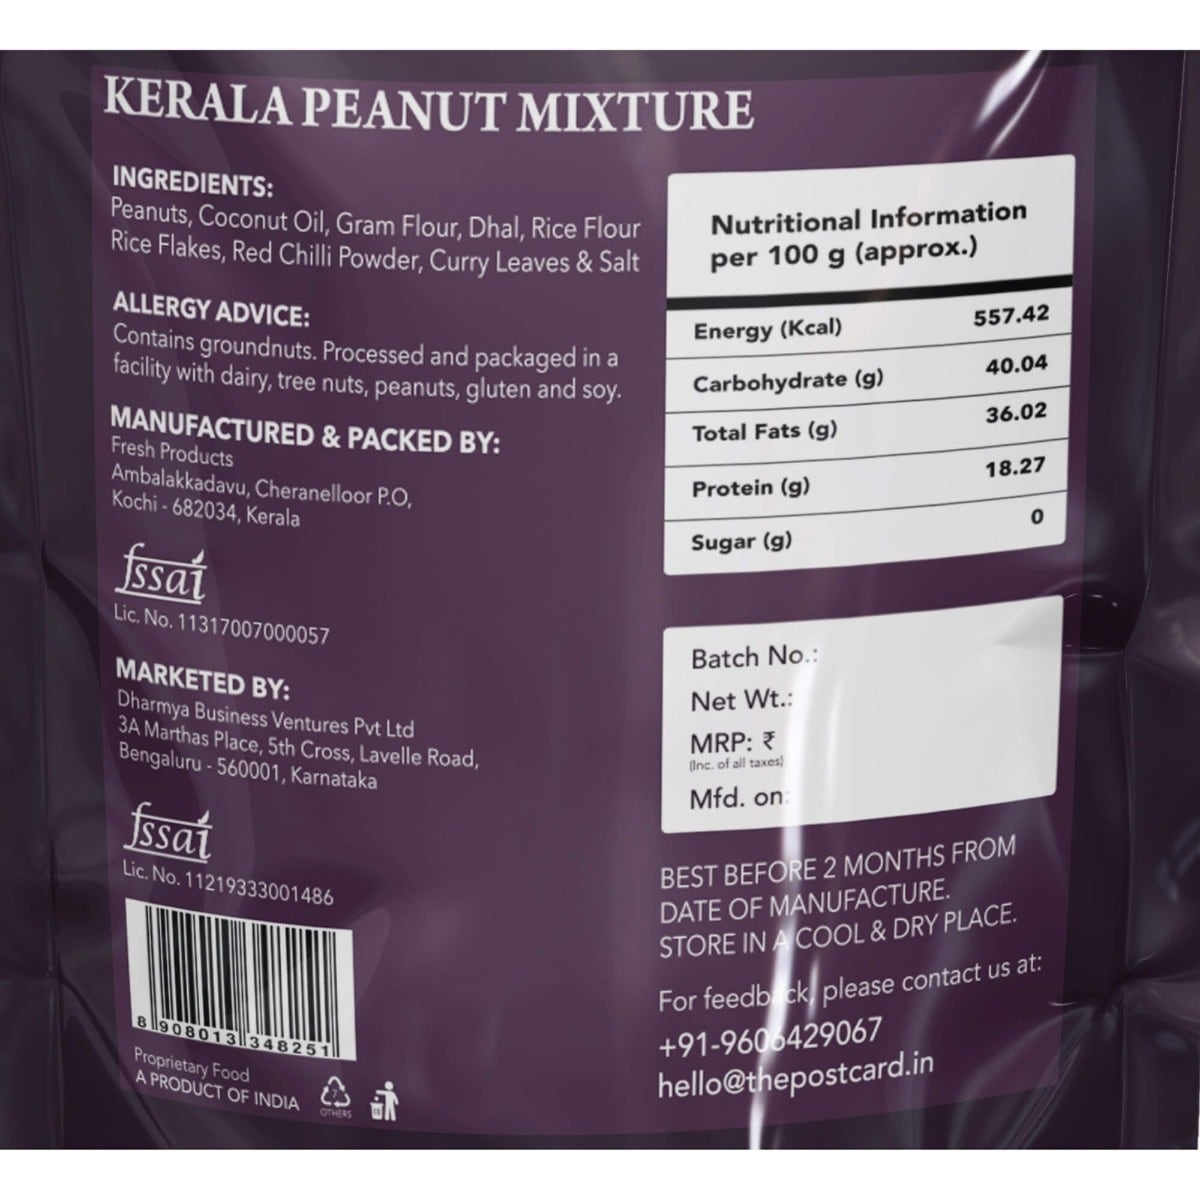 kerala peanut mixture ingredients